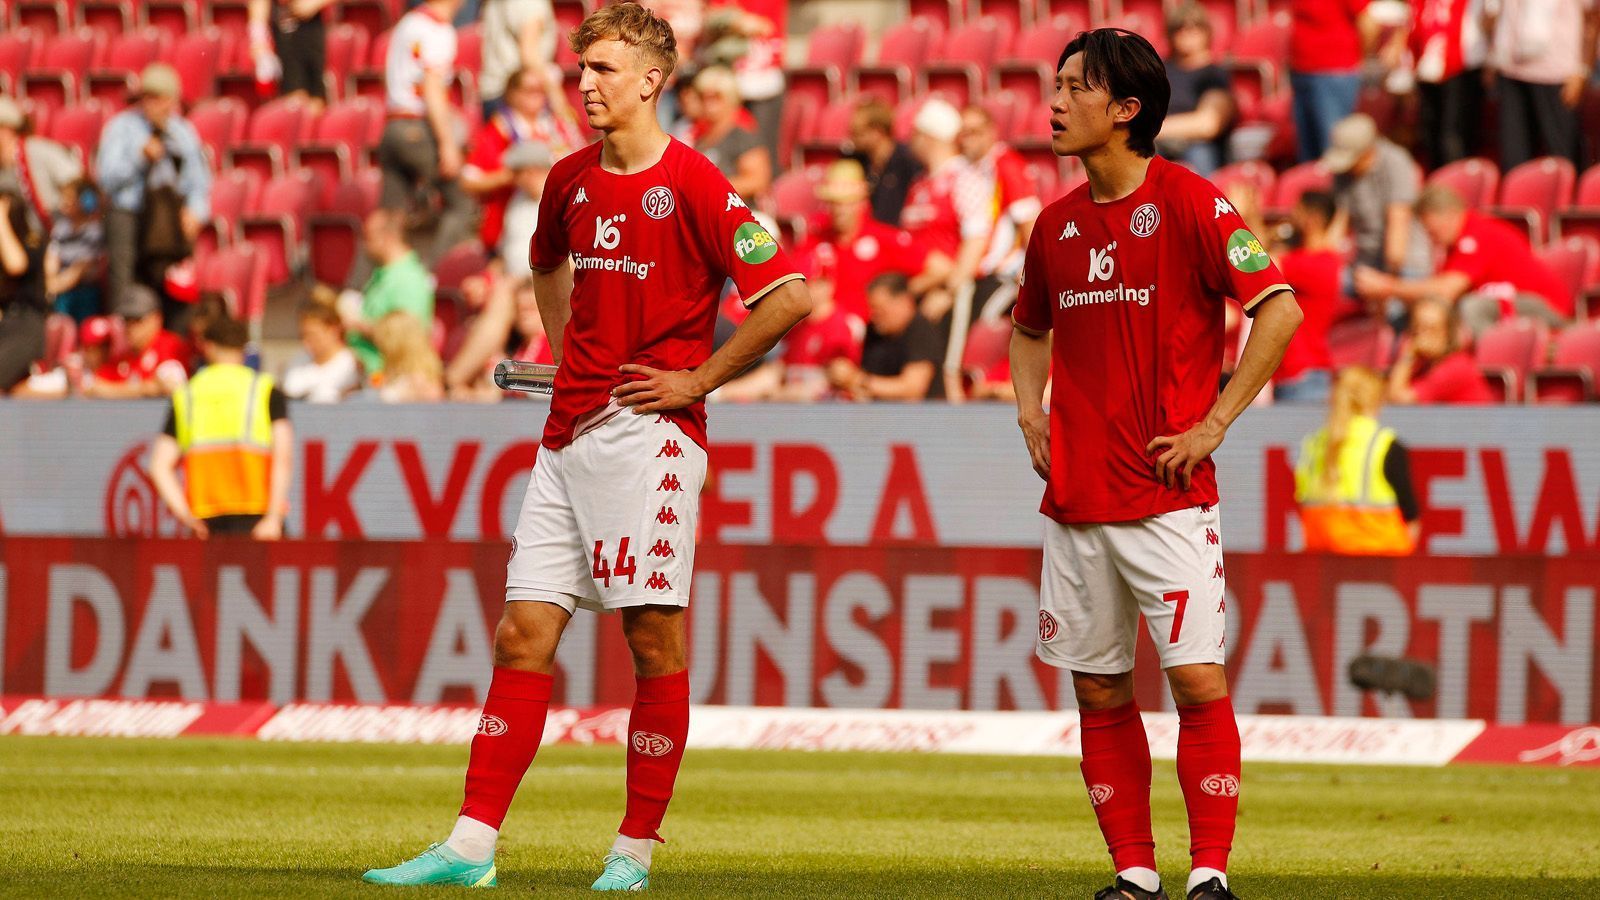 
                <strong>Die Motivation des 1. FSV Mainz 05</strong><br>
                Für Mainz geht es zunächst einmal darum, sich nicht mit fünf Niederlagen in Serie aus der Saison zu verabschieden. Trainer Bo Svensson ärgert, dass der Negativlauf alles überschattet: "Leider ist es der momentane Eindruck, der bleibt. Fakt ist jedoch, dass wir eine gute Saison spielen." Mit einem Sieg in Dortmund könnte man dies noch einmal unterstreichen und vielleicht sogar auf Platz 8 vorrücken, sofern Eintracht Frankfurt gegen den SC Freiburg verliert bzw. unentschieden spielt und Mainz 6 Treffer im Torverhältnis aufholt.  
              